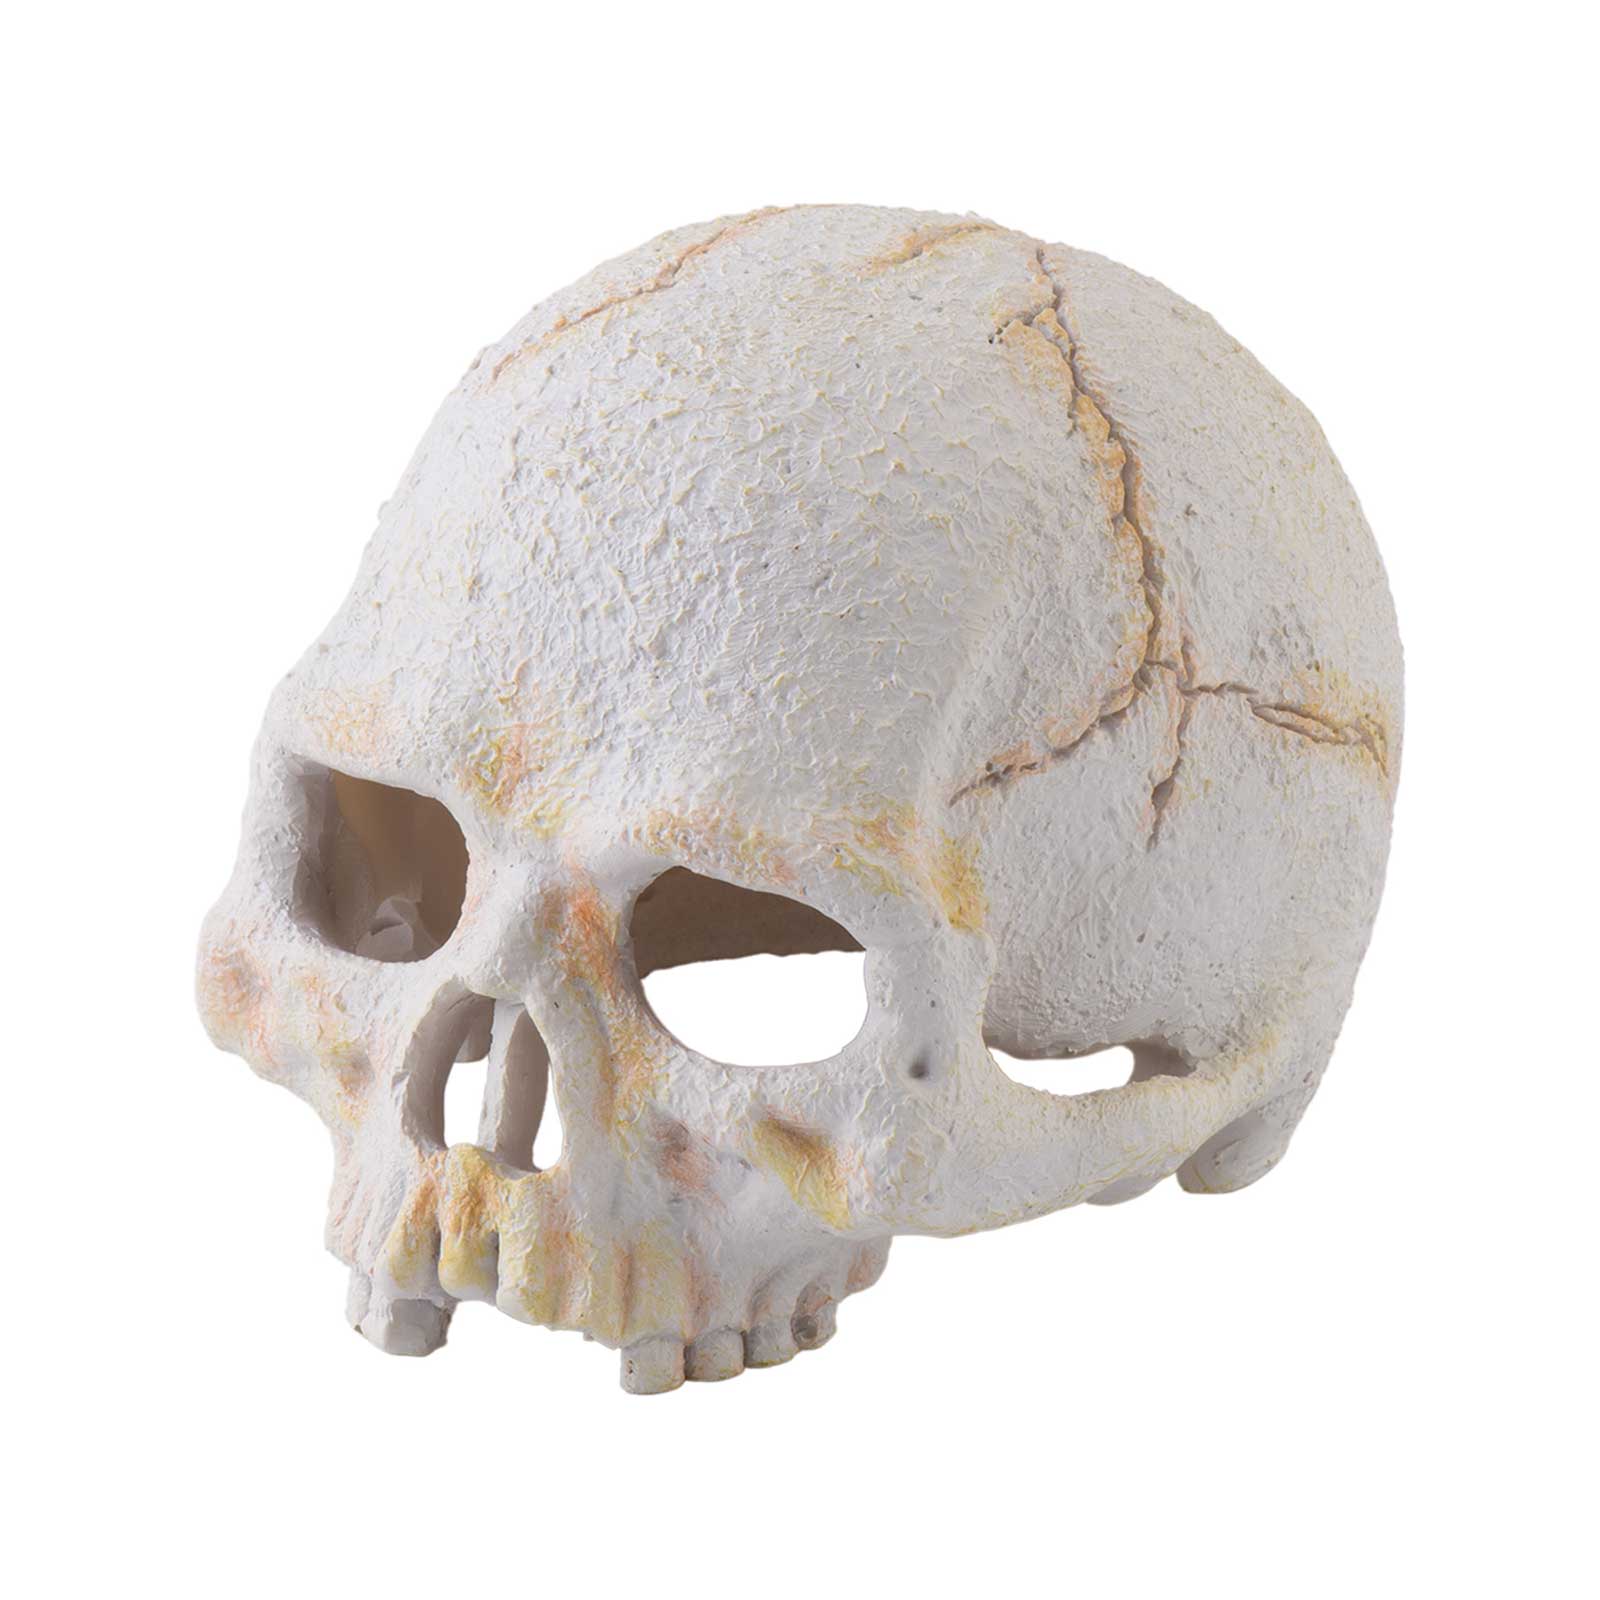 Exo Terra Ornament Primate Skull